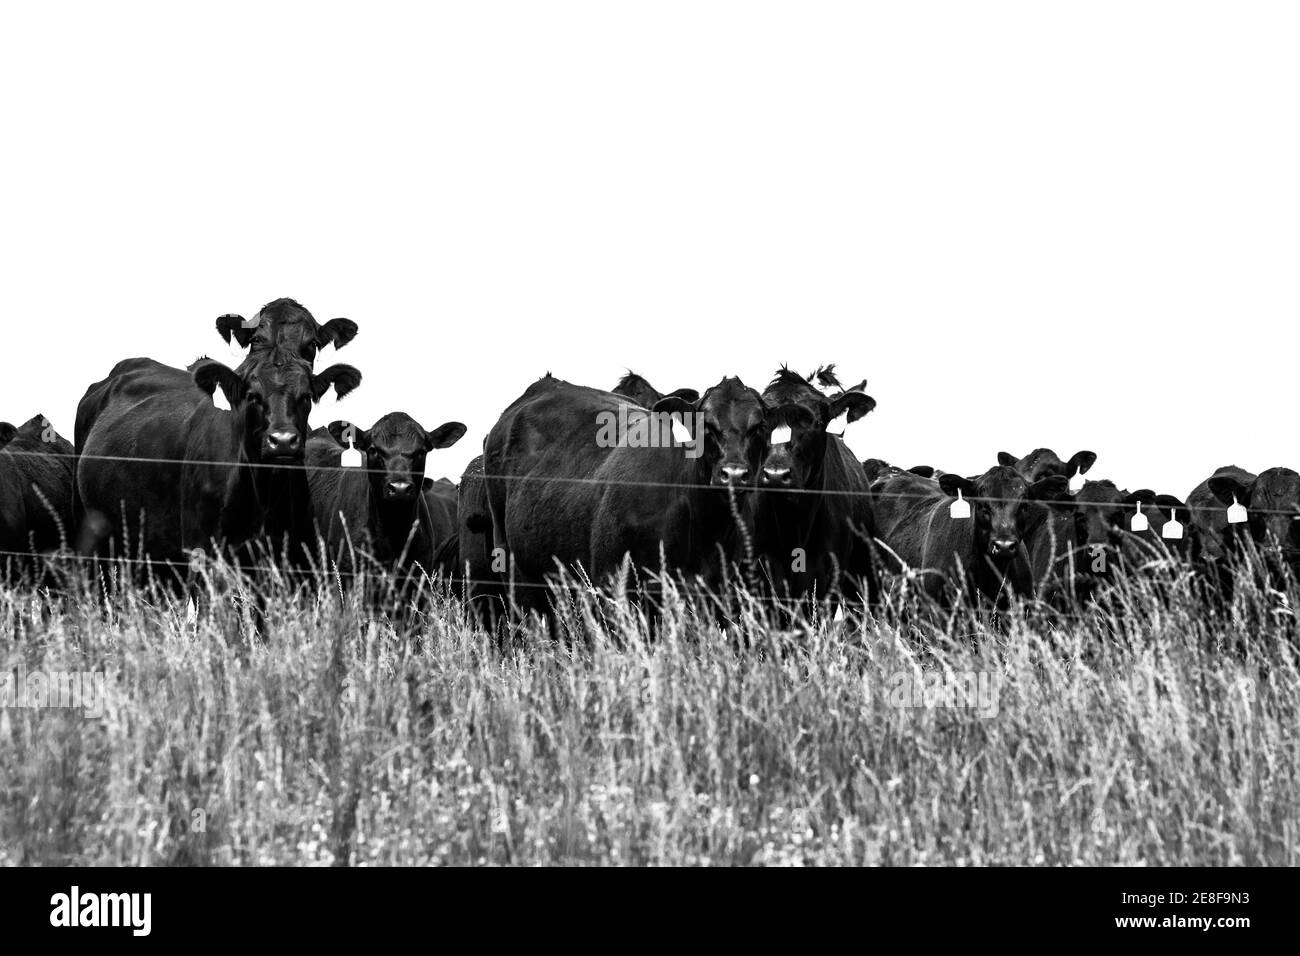 Image en noir et blanc d'une ligne de vaches Angus se tenir derrière une clôture électrique temporaire Banque D'Images